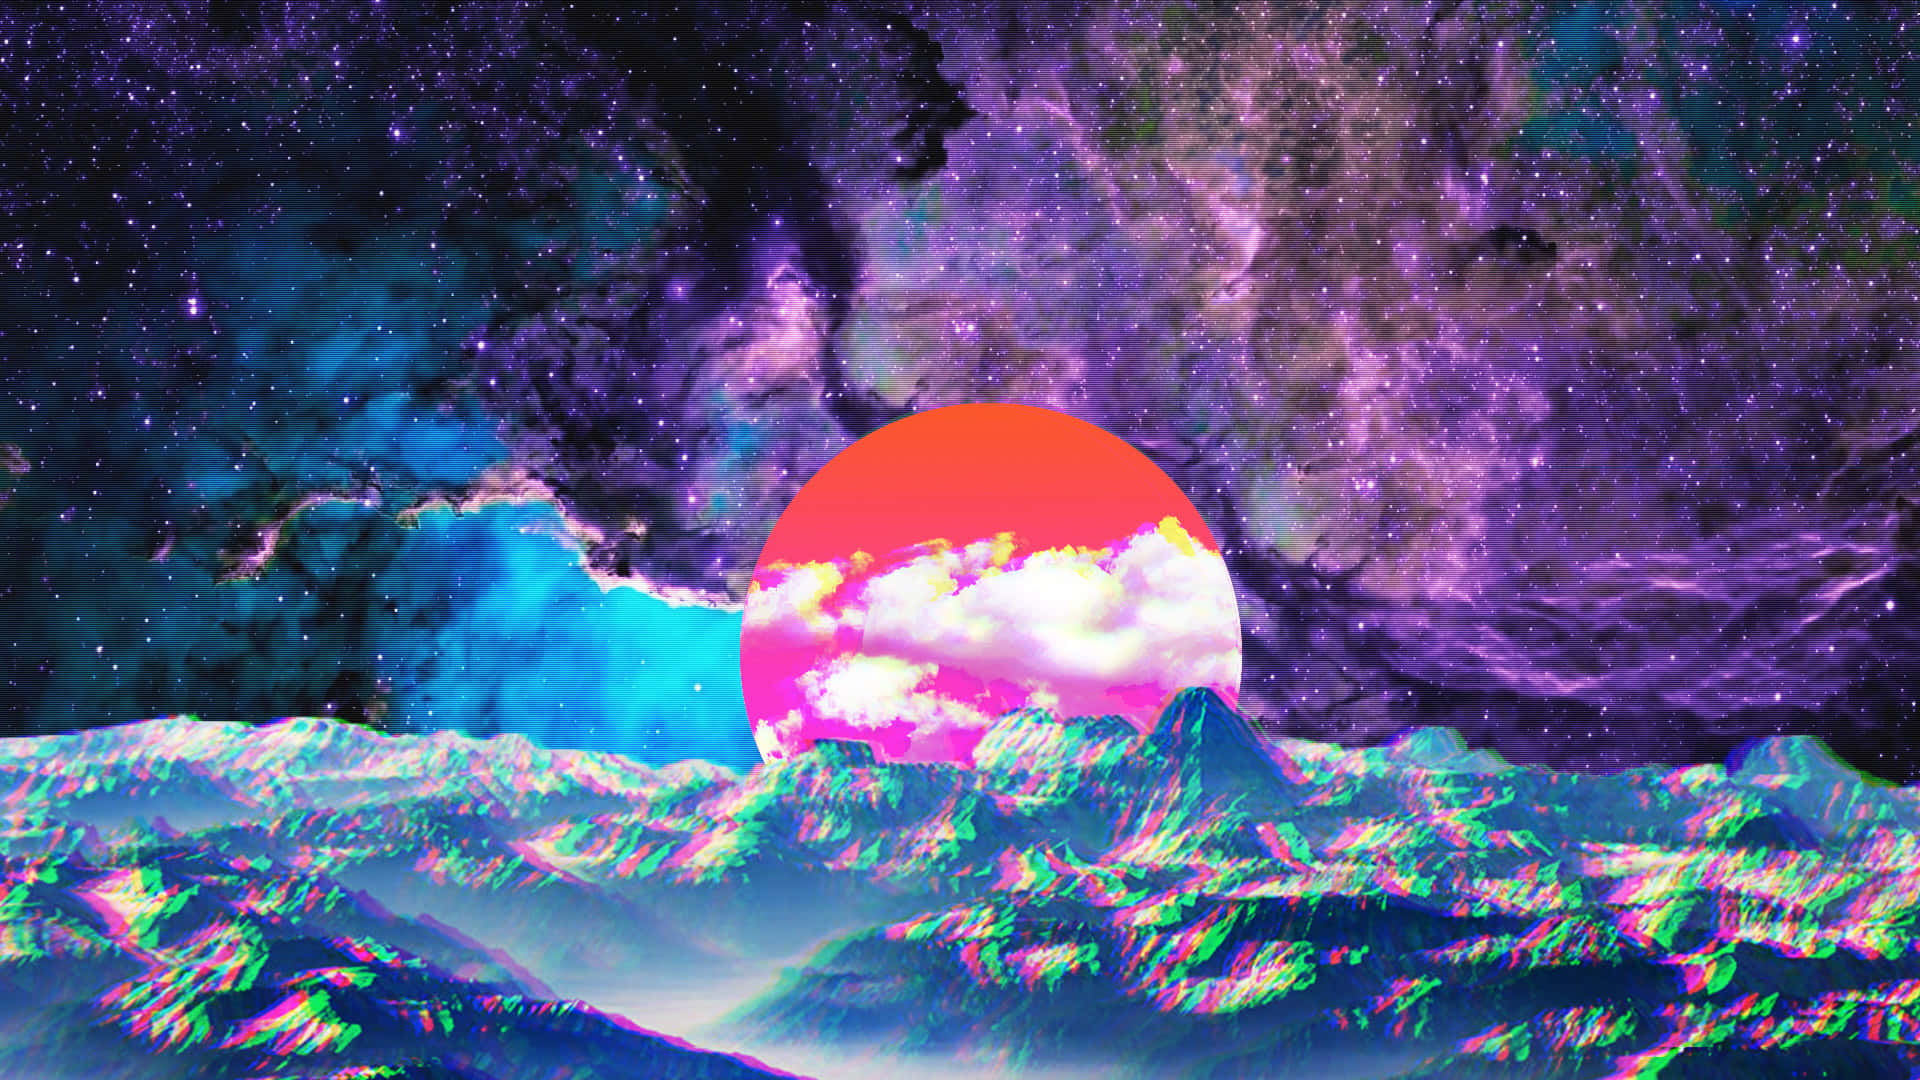 Unaimagen Pixelada Y Colorida De Un Sol En El Espacio